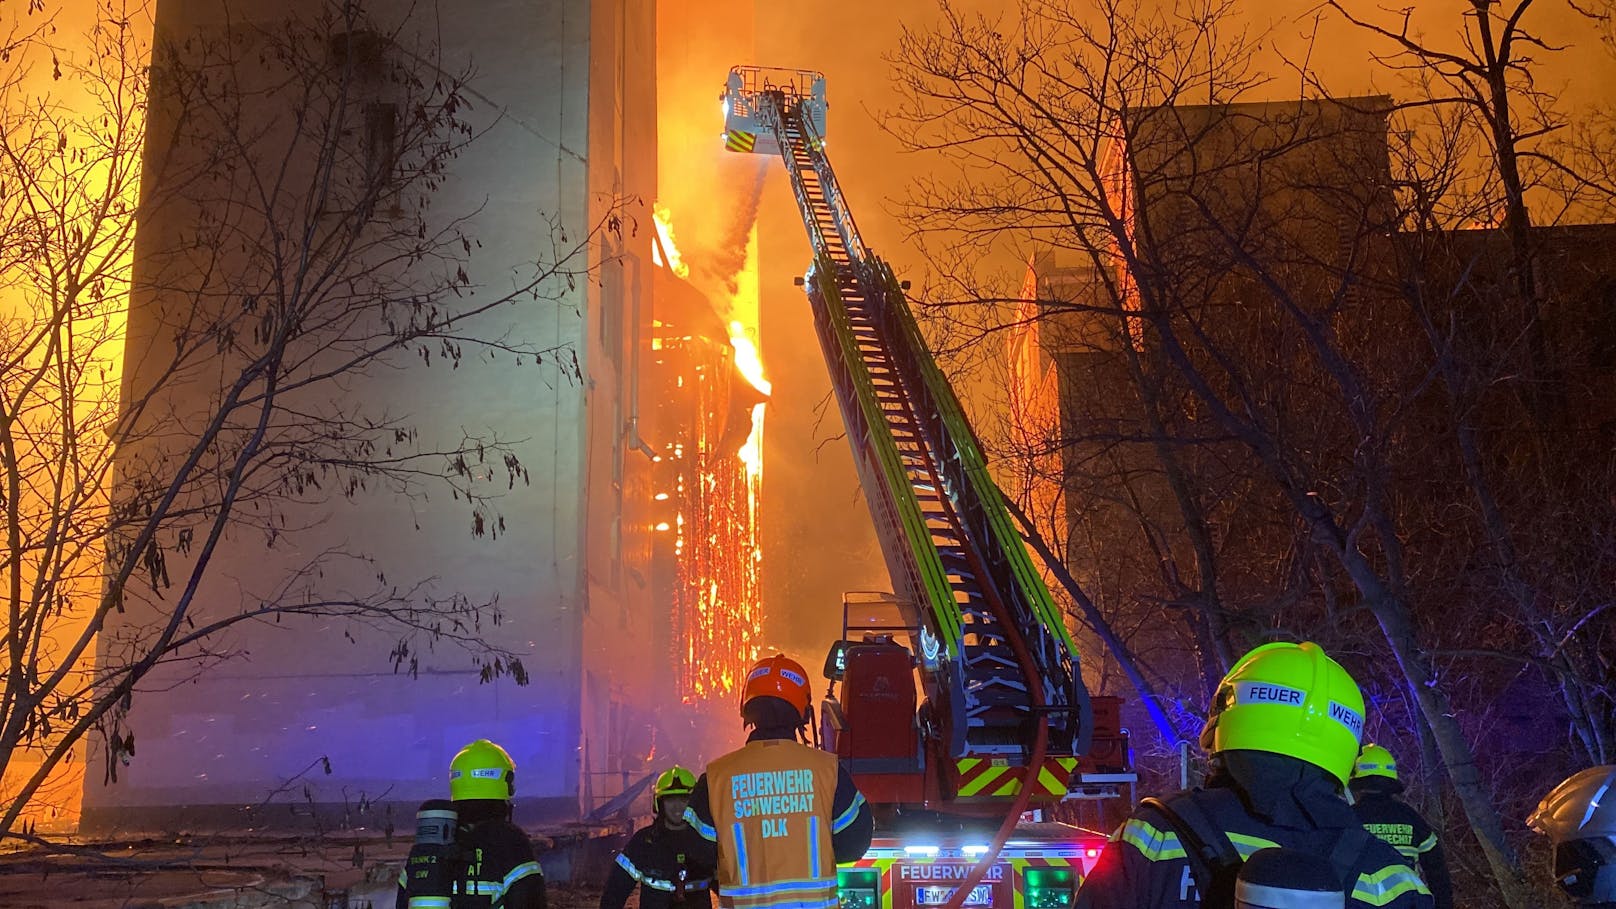 Der Brand eines leer stehenden Industriegebäudes zwischen zwei Silos in Schwechat (Bezirk Bruck a.d. Leitha) an der Stadtgrenze zu Wien hat in der Nacht auf Sonntag einen Großeinsatz der Feuerwehr ausgelöst.